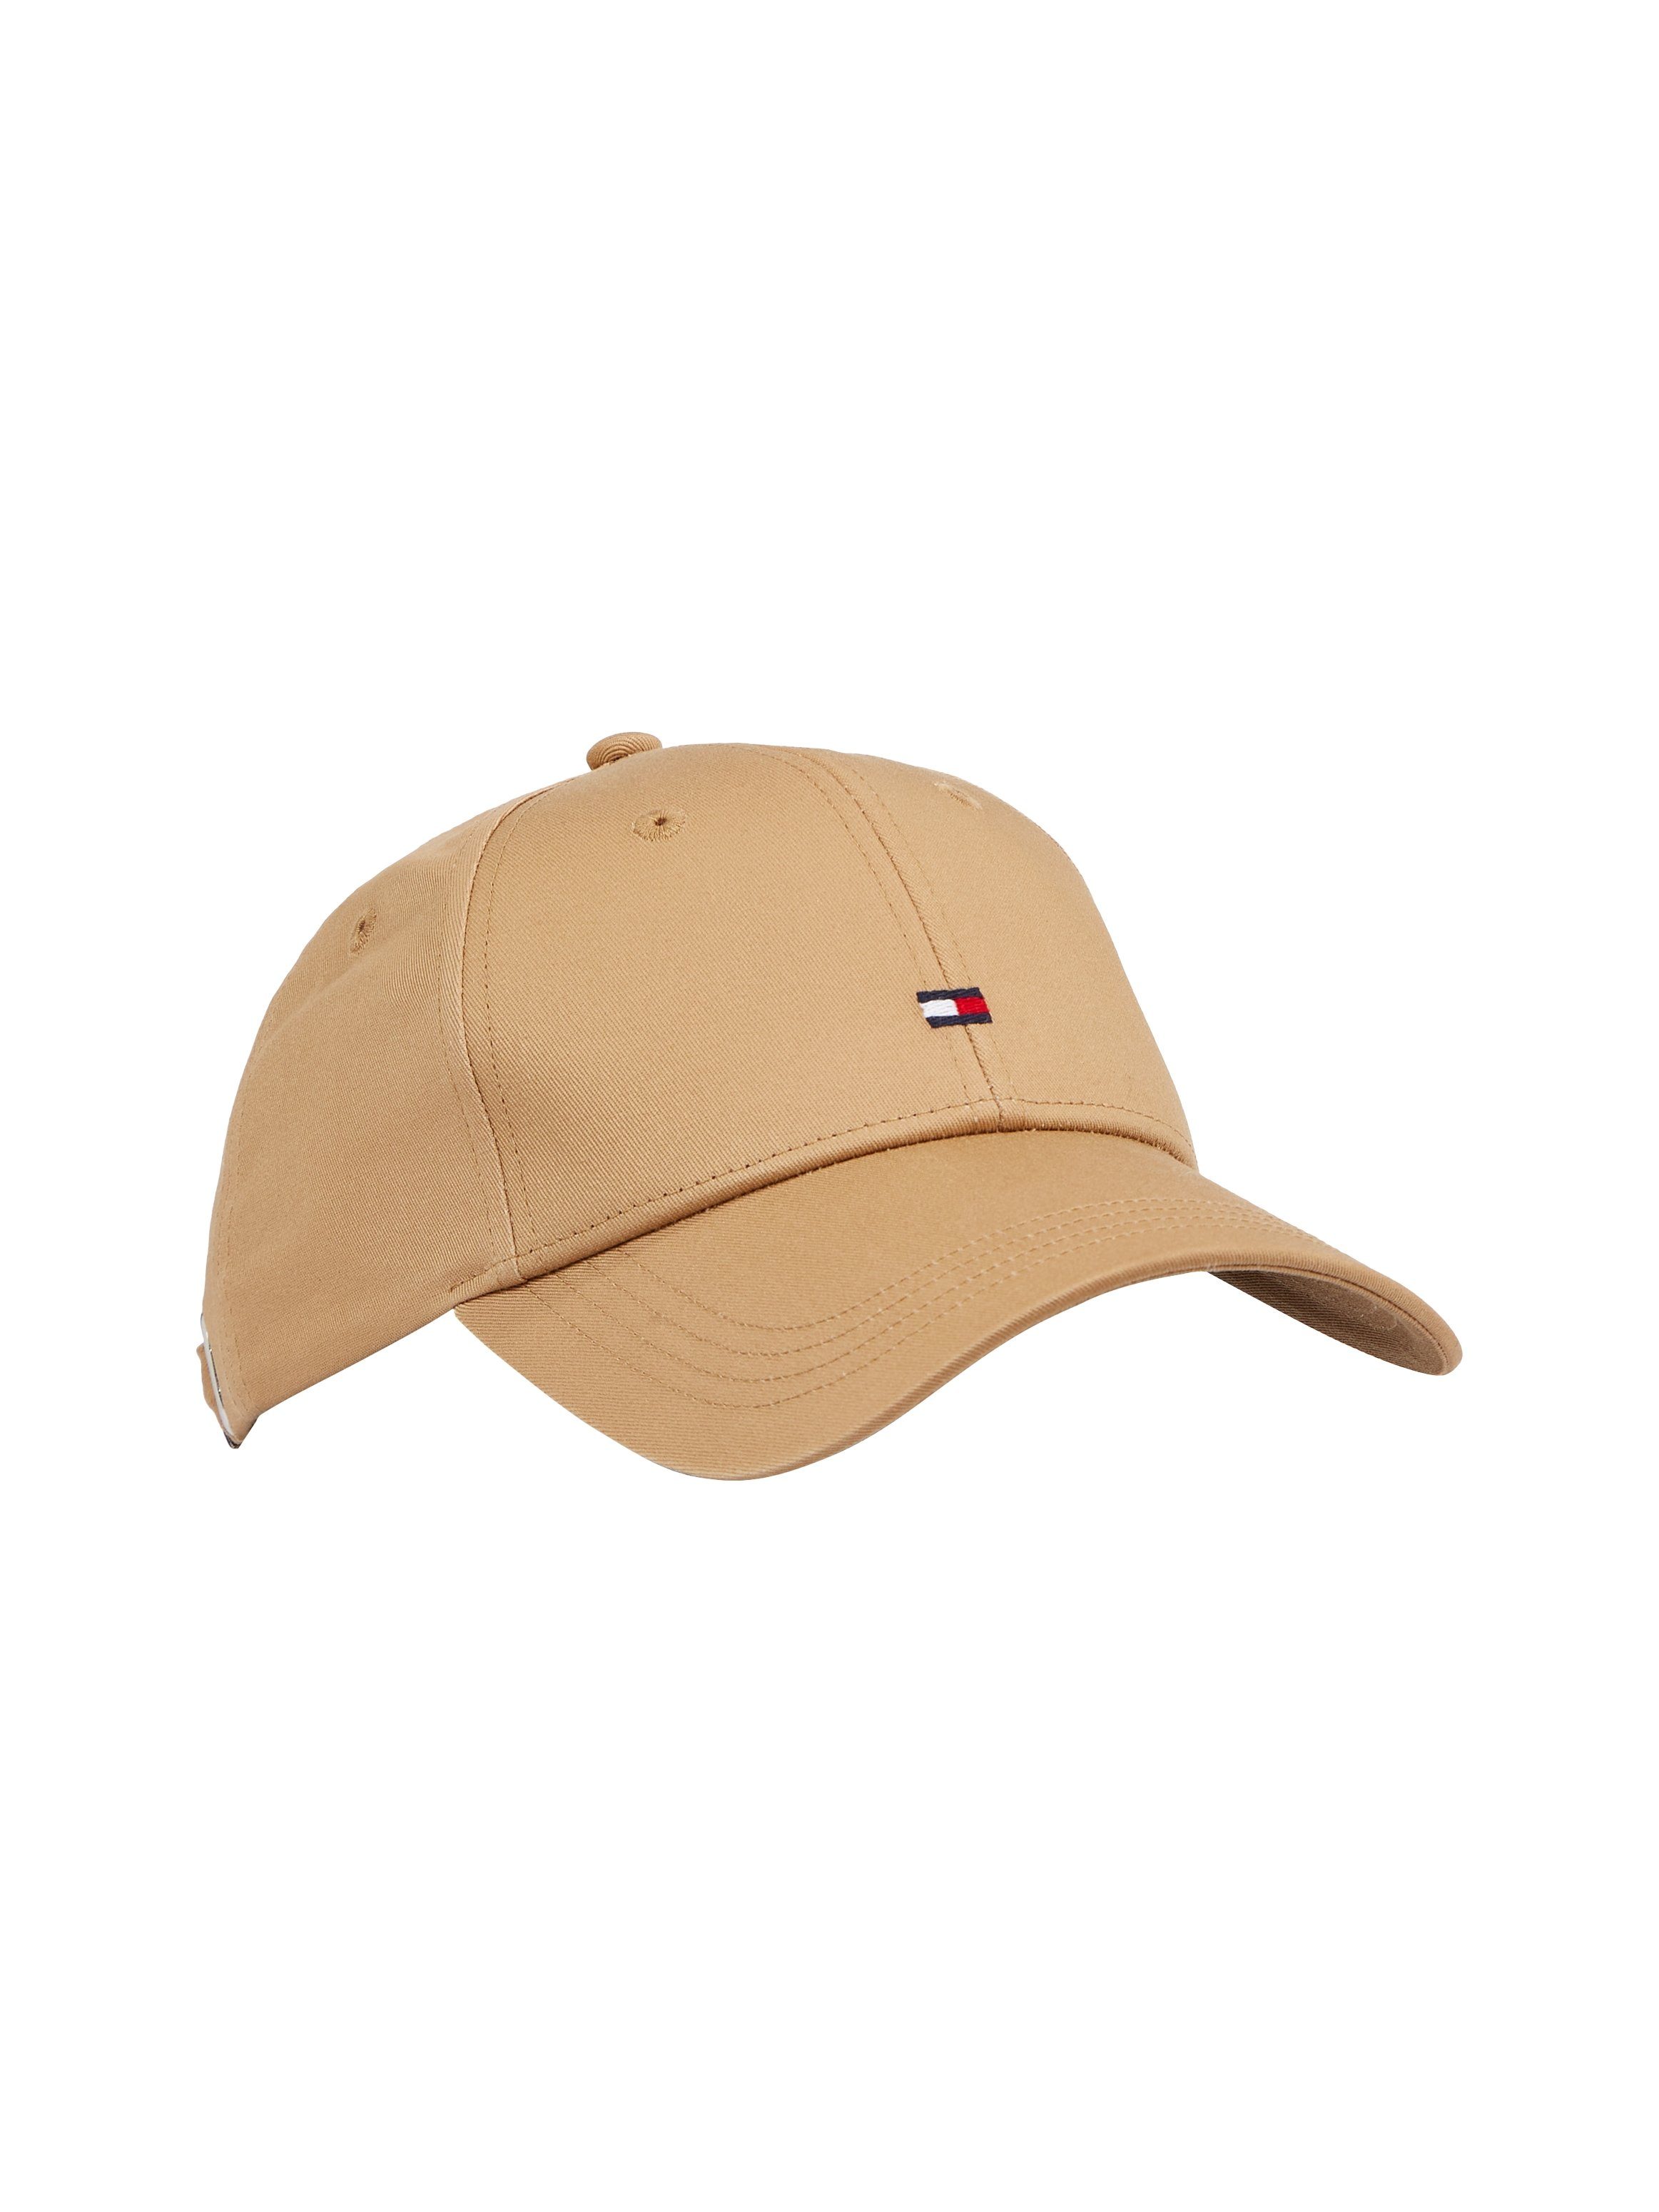 Tommy Hilfiger Baseball Cap Classic ESSENTIAL Khaki FLAG CAP